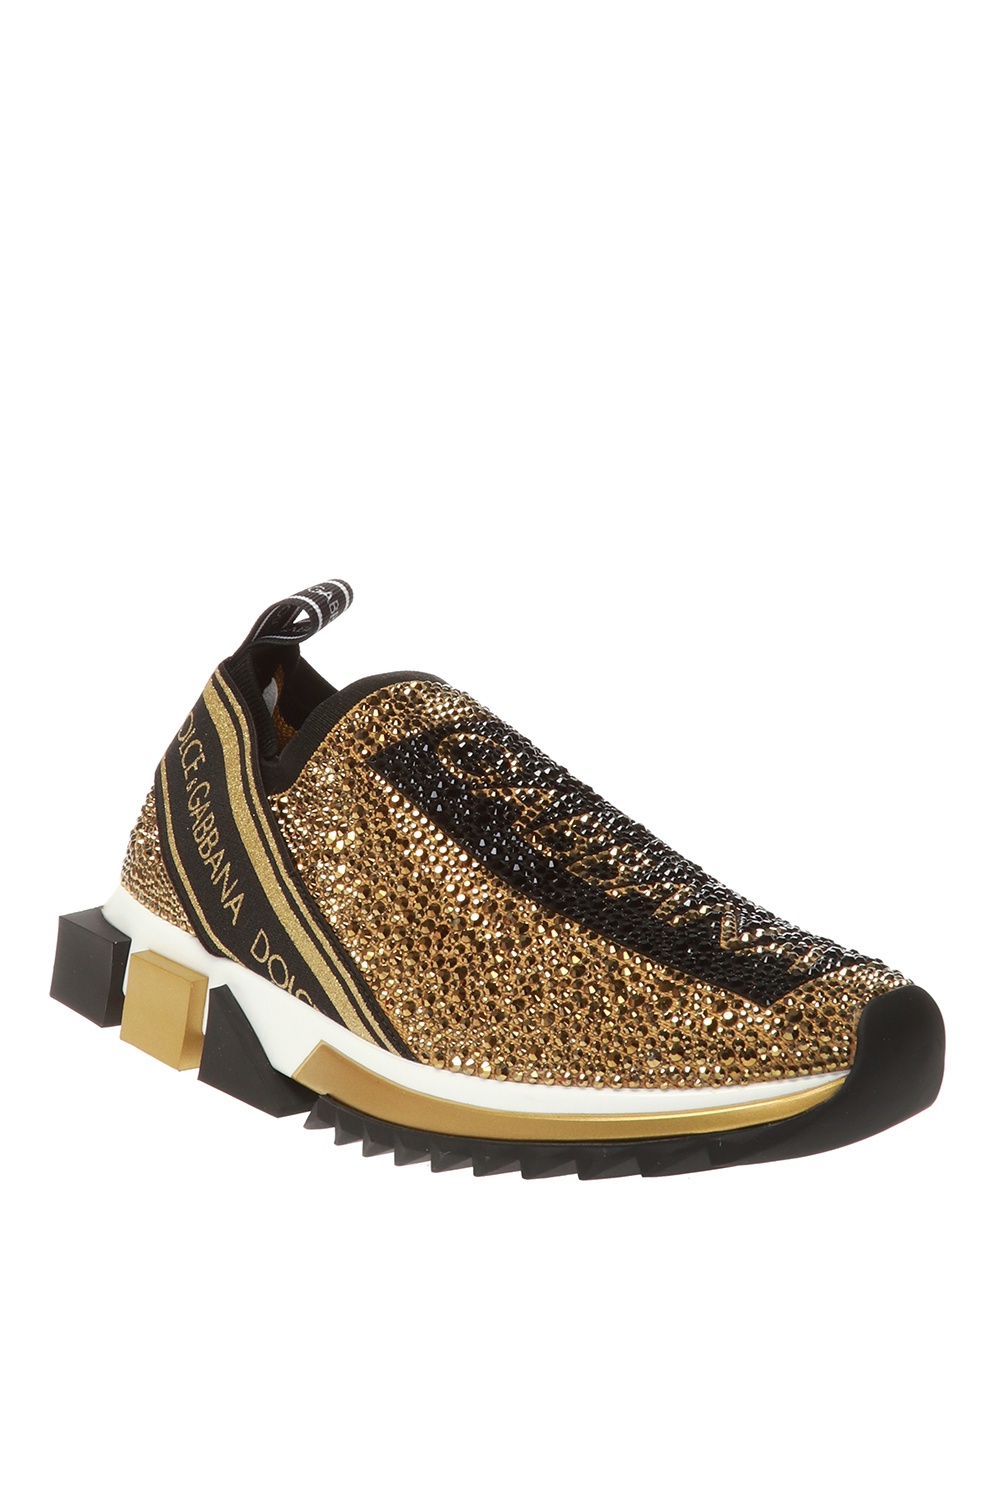 Dolce & Gabbana ‘Sorrento’ slip-on sneakers